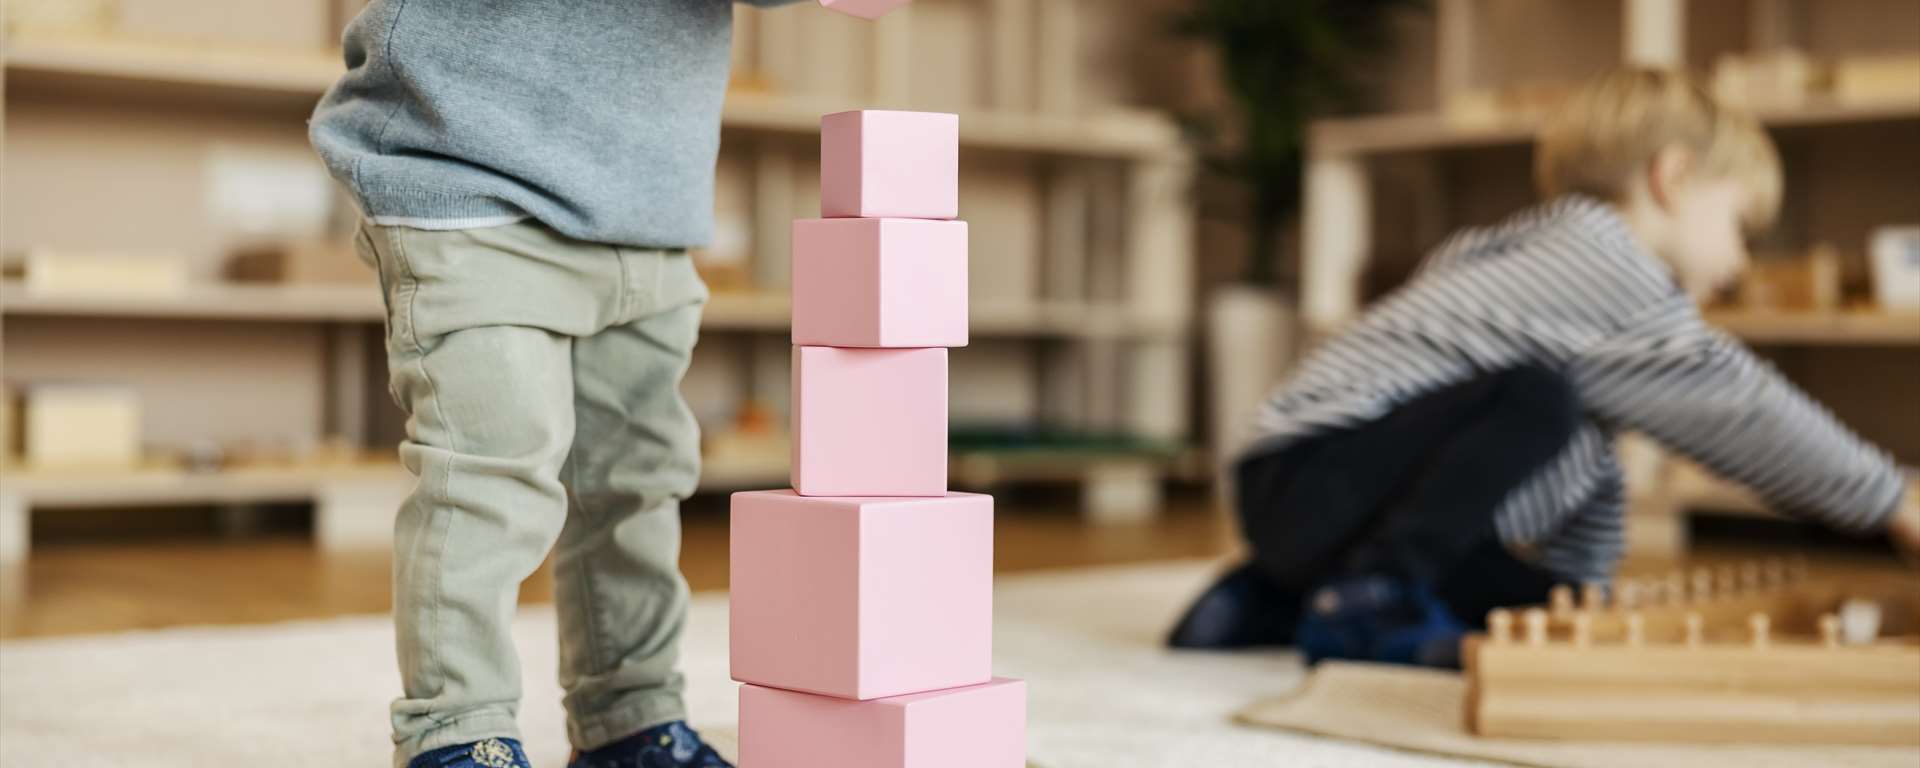 Montessori-Tageskindergarten an attraktiver Lage mit langjähriger Reputation